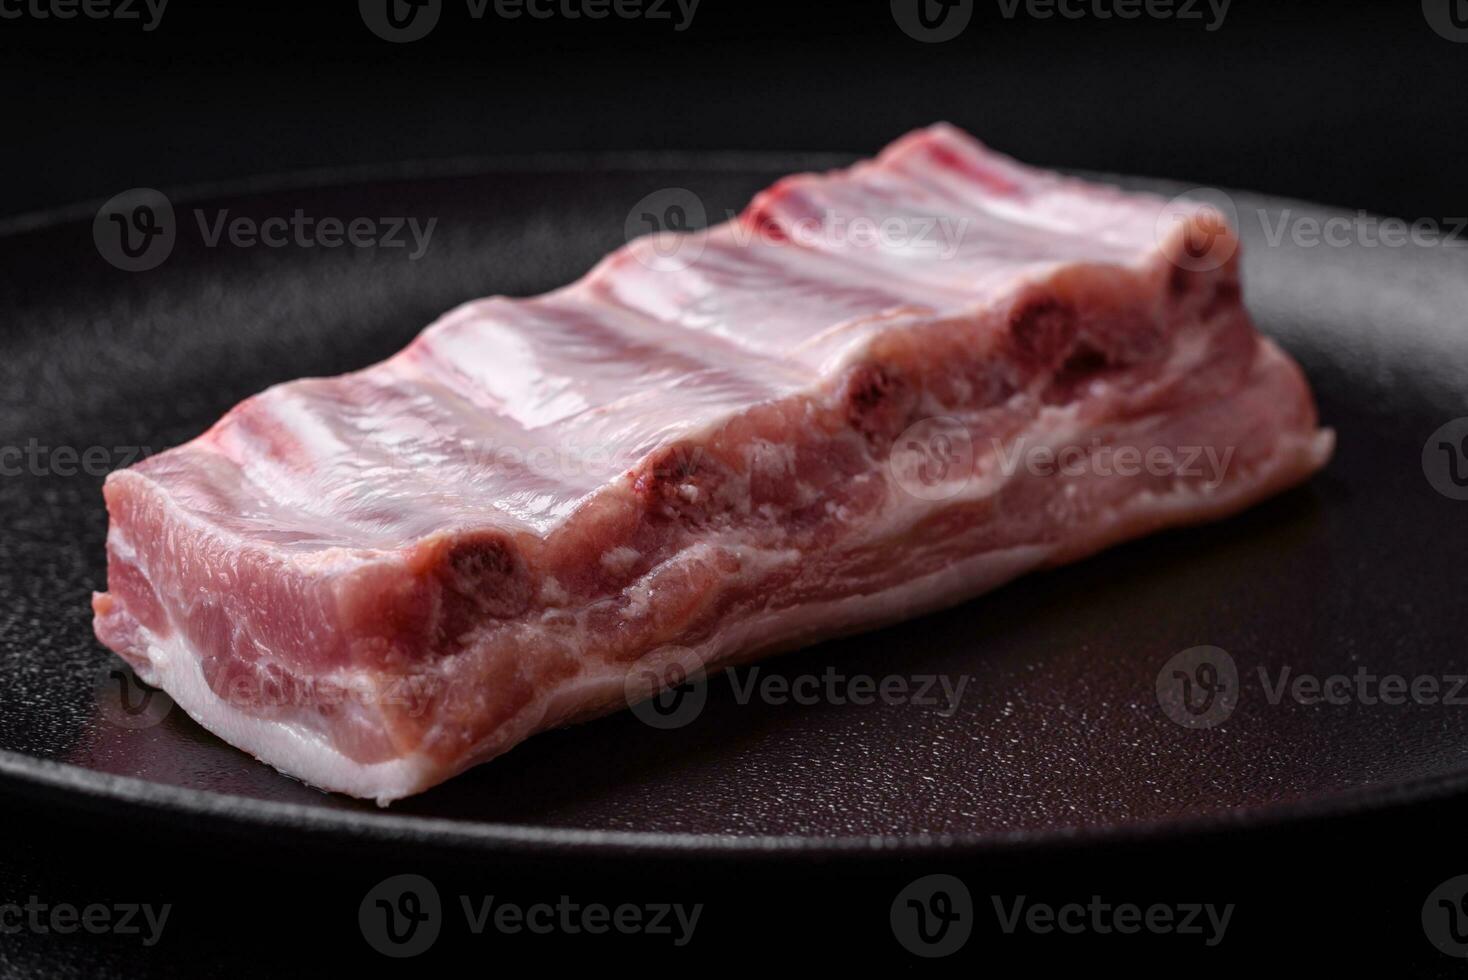 cru carne de porco costelas com carne com sal, especiarias e ervas foto